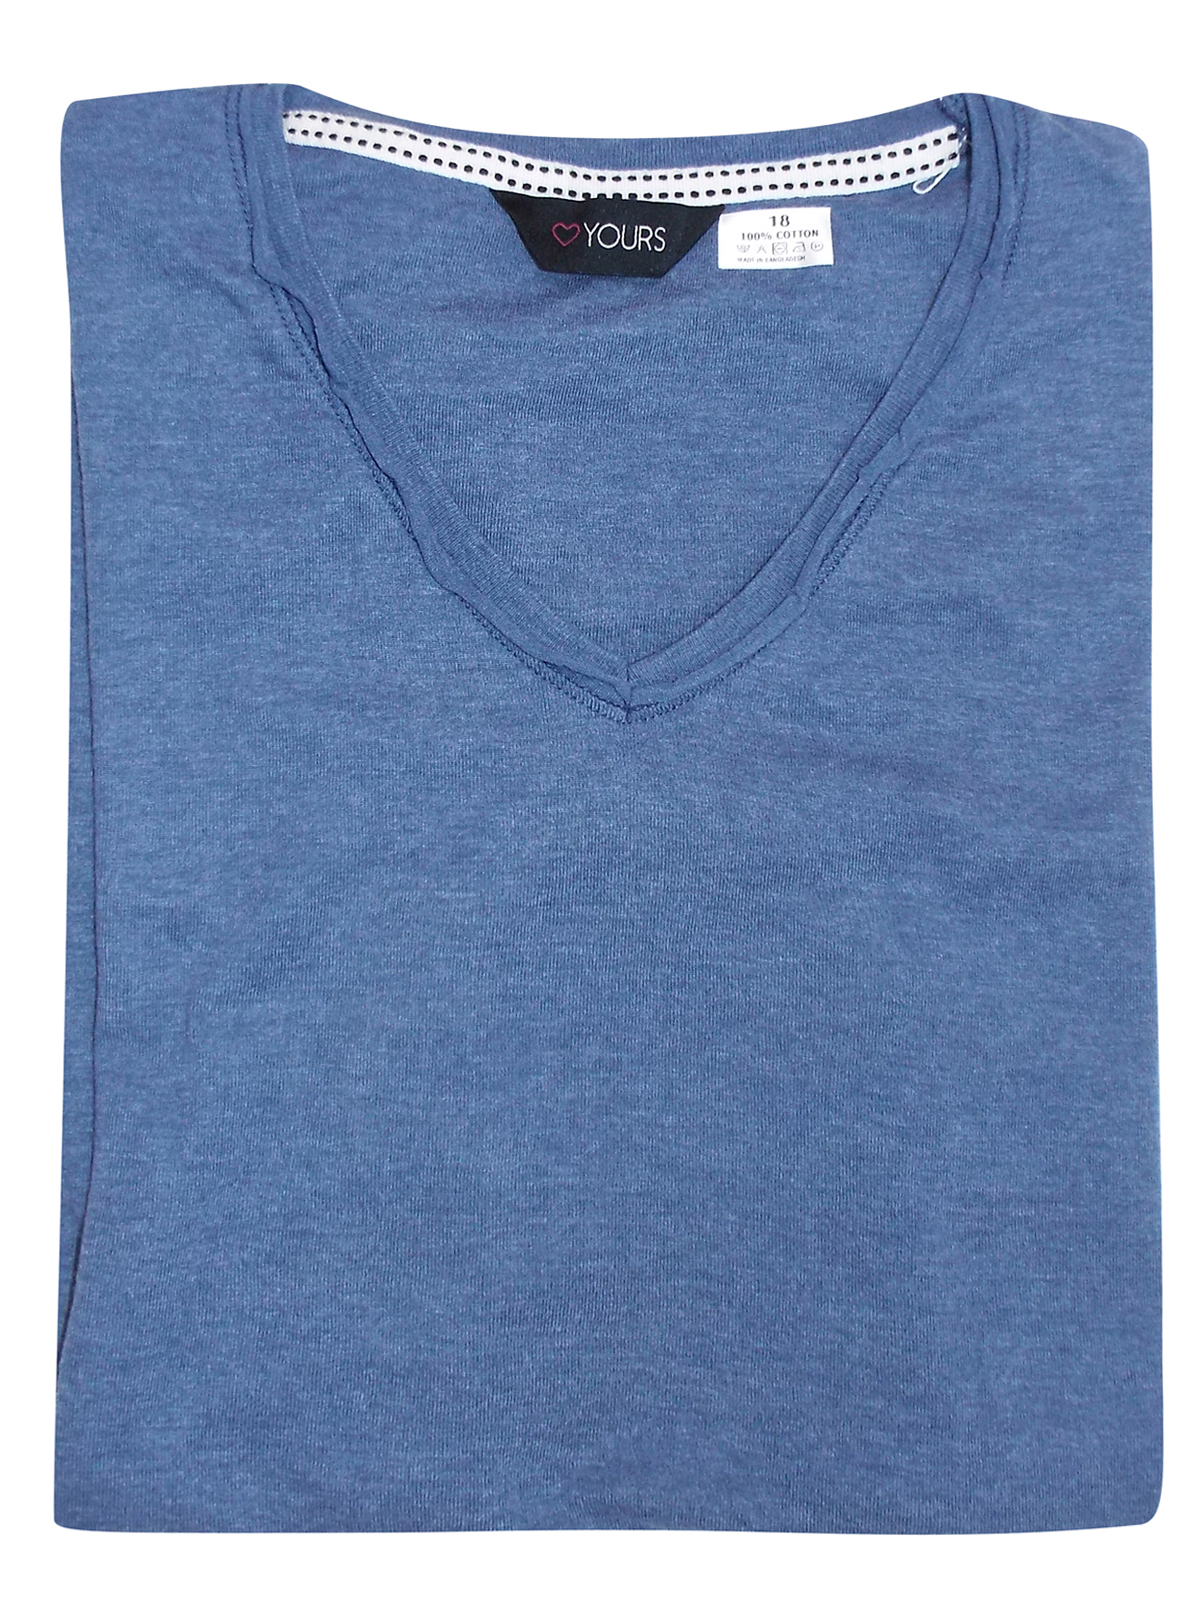 CURVE - - Yours DENIM-BLUE Pure Cotton V-Neck Short Sleeve T-Shirt ...